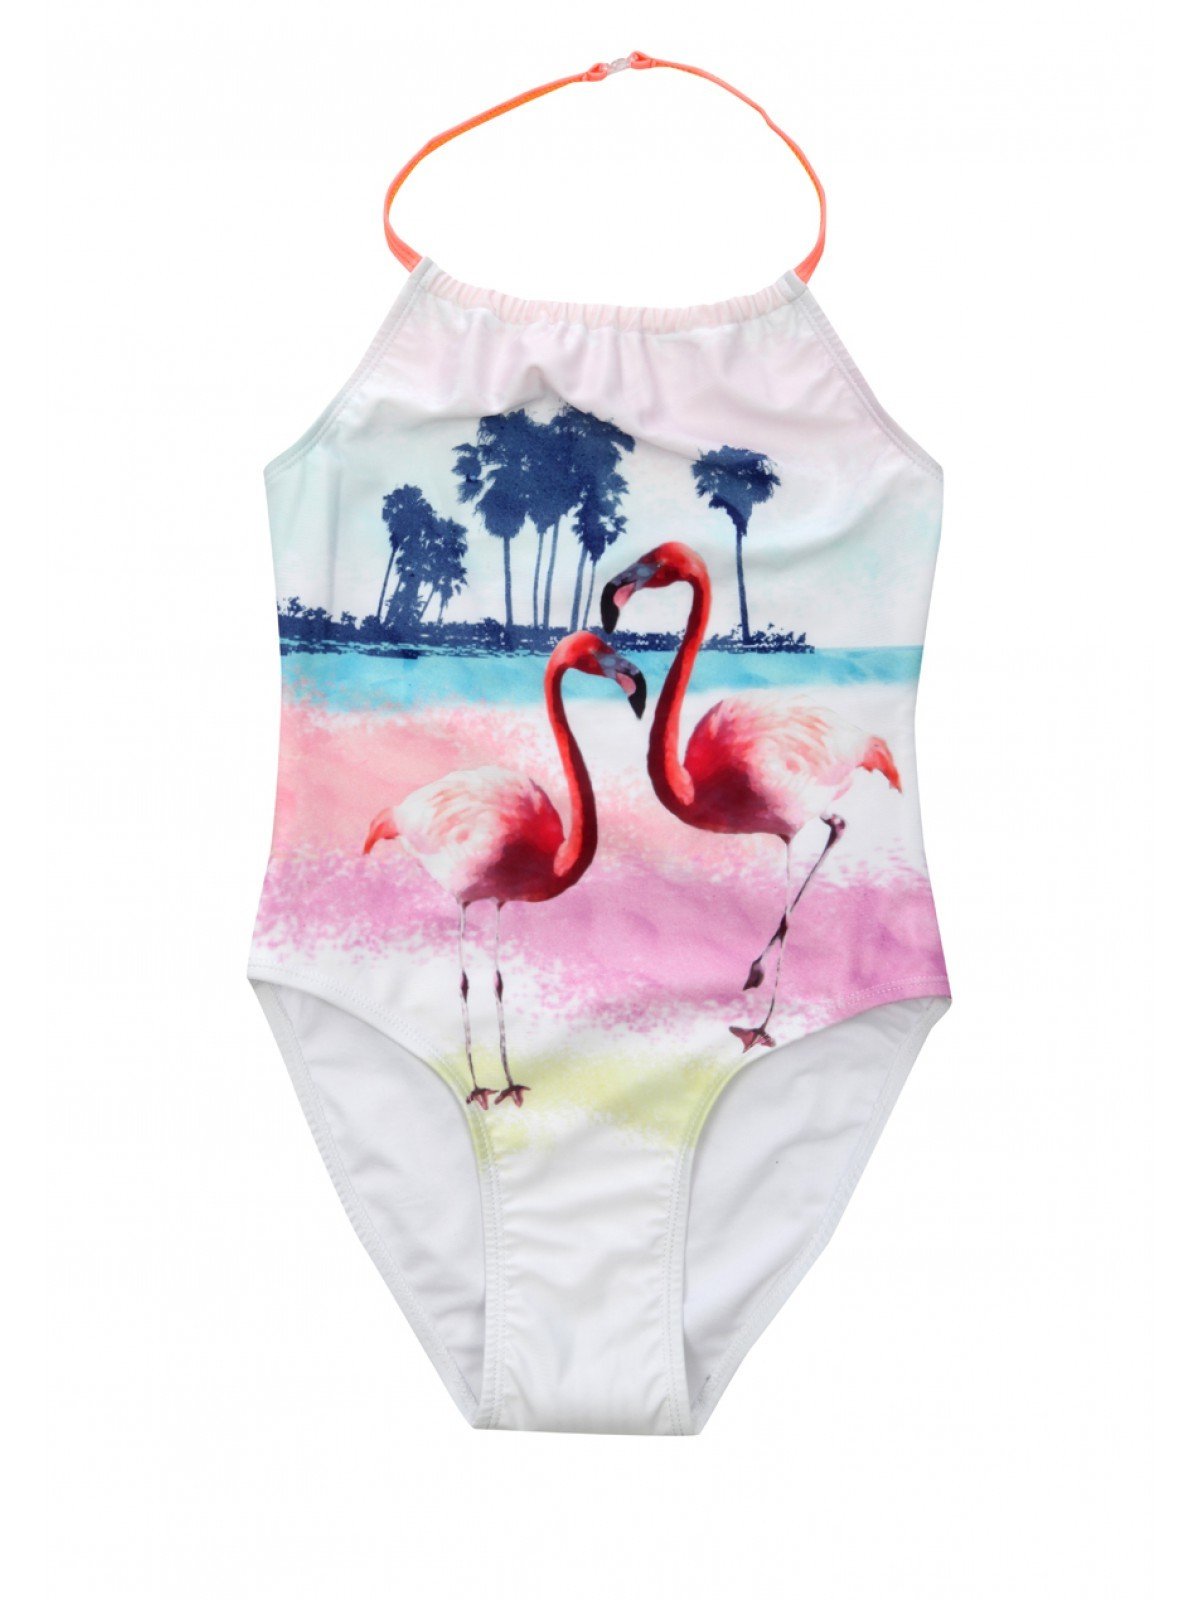 Kinder Badeanzug mit umwerfendem Design - Flamingos legen voll Im Trend